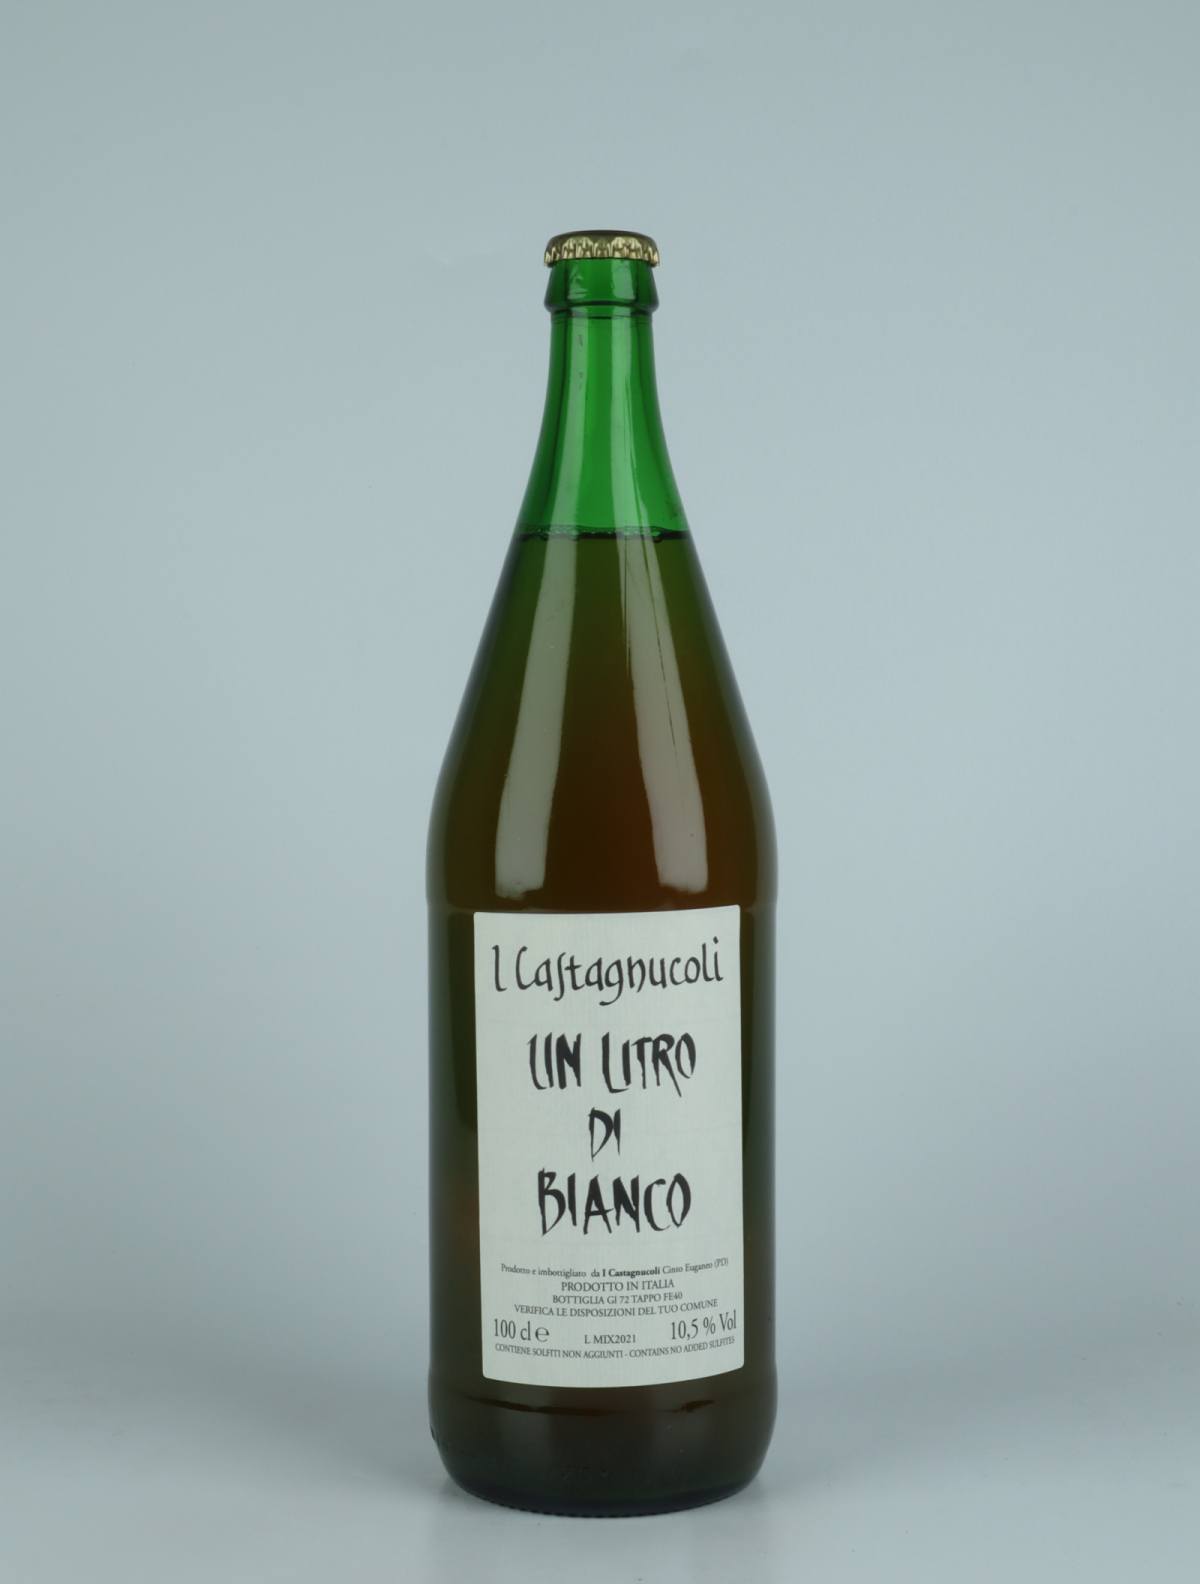 A bottle 2021 Un Litro di Bianco White wine from I Castagnucoli, Veneto in Italy